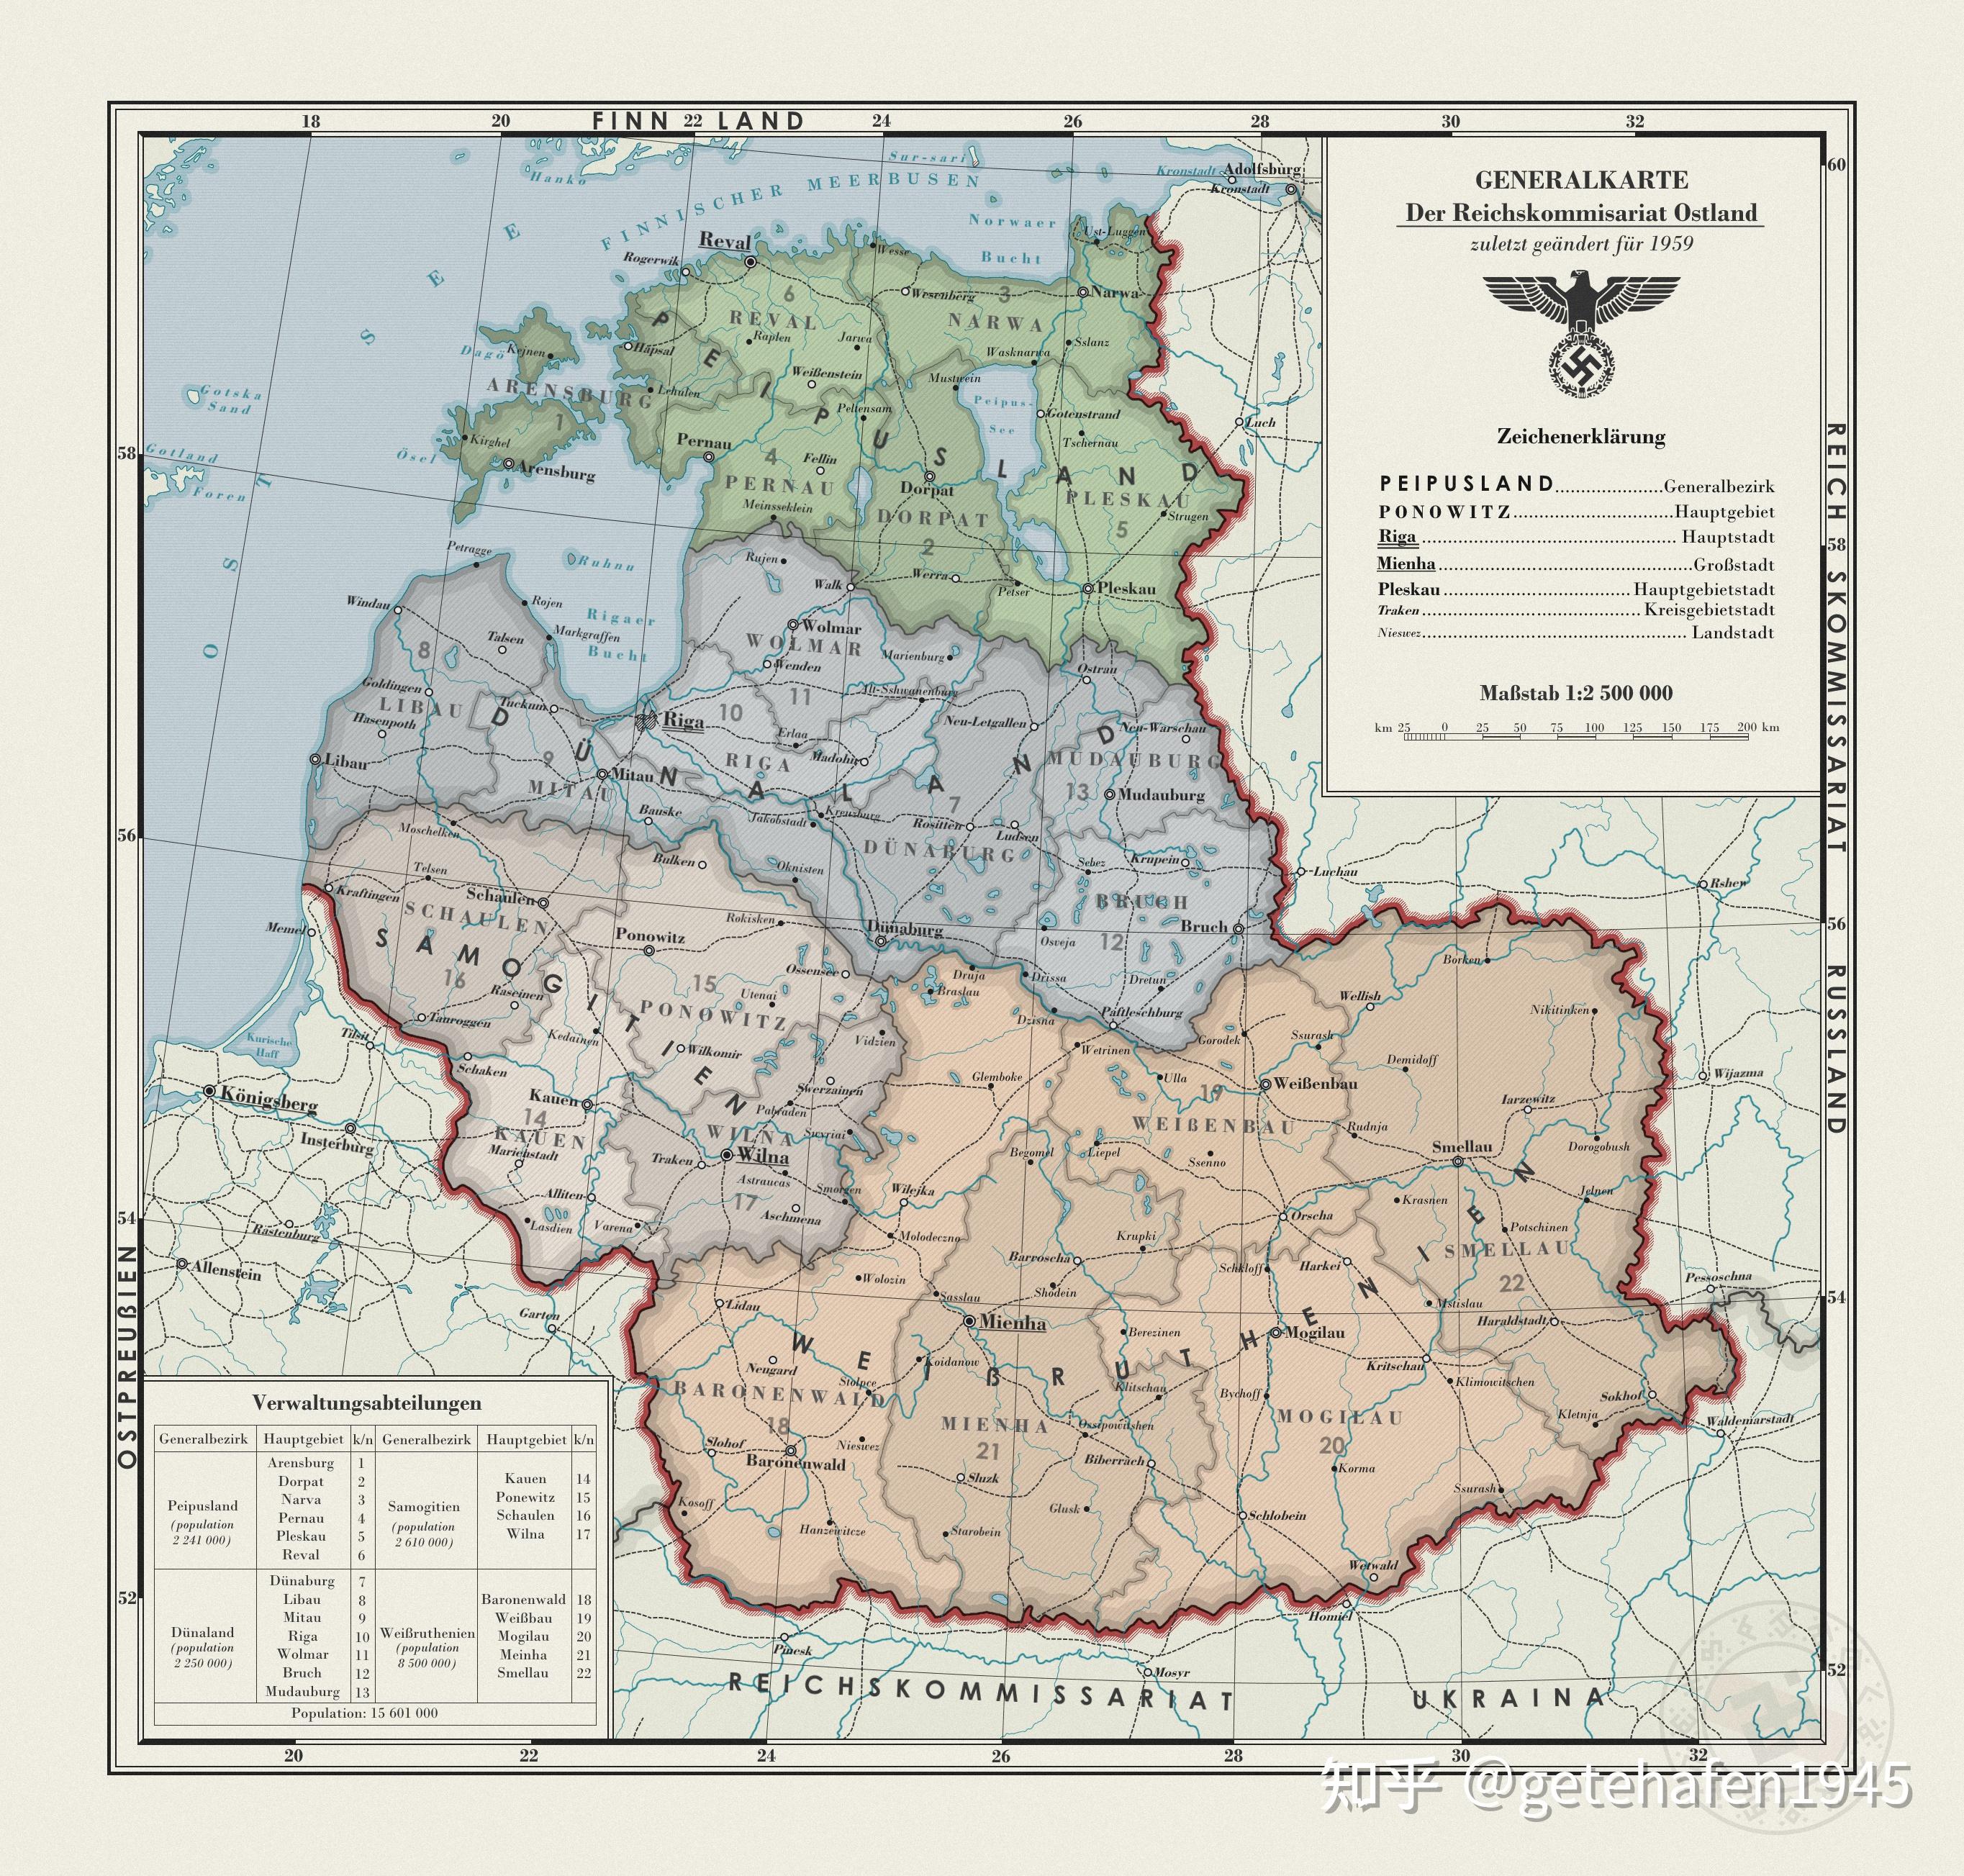 东方总督辖区(ostland)是二战期间德国在波罗的海三国以及白俄罗斯的